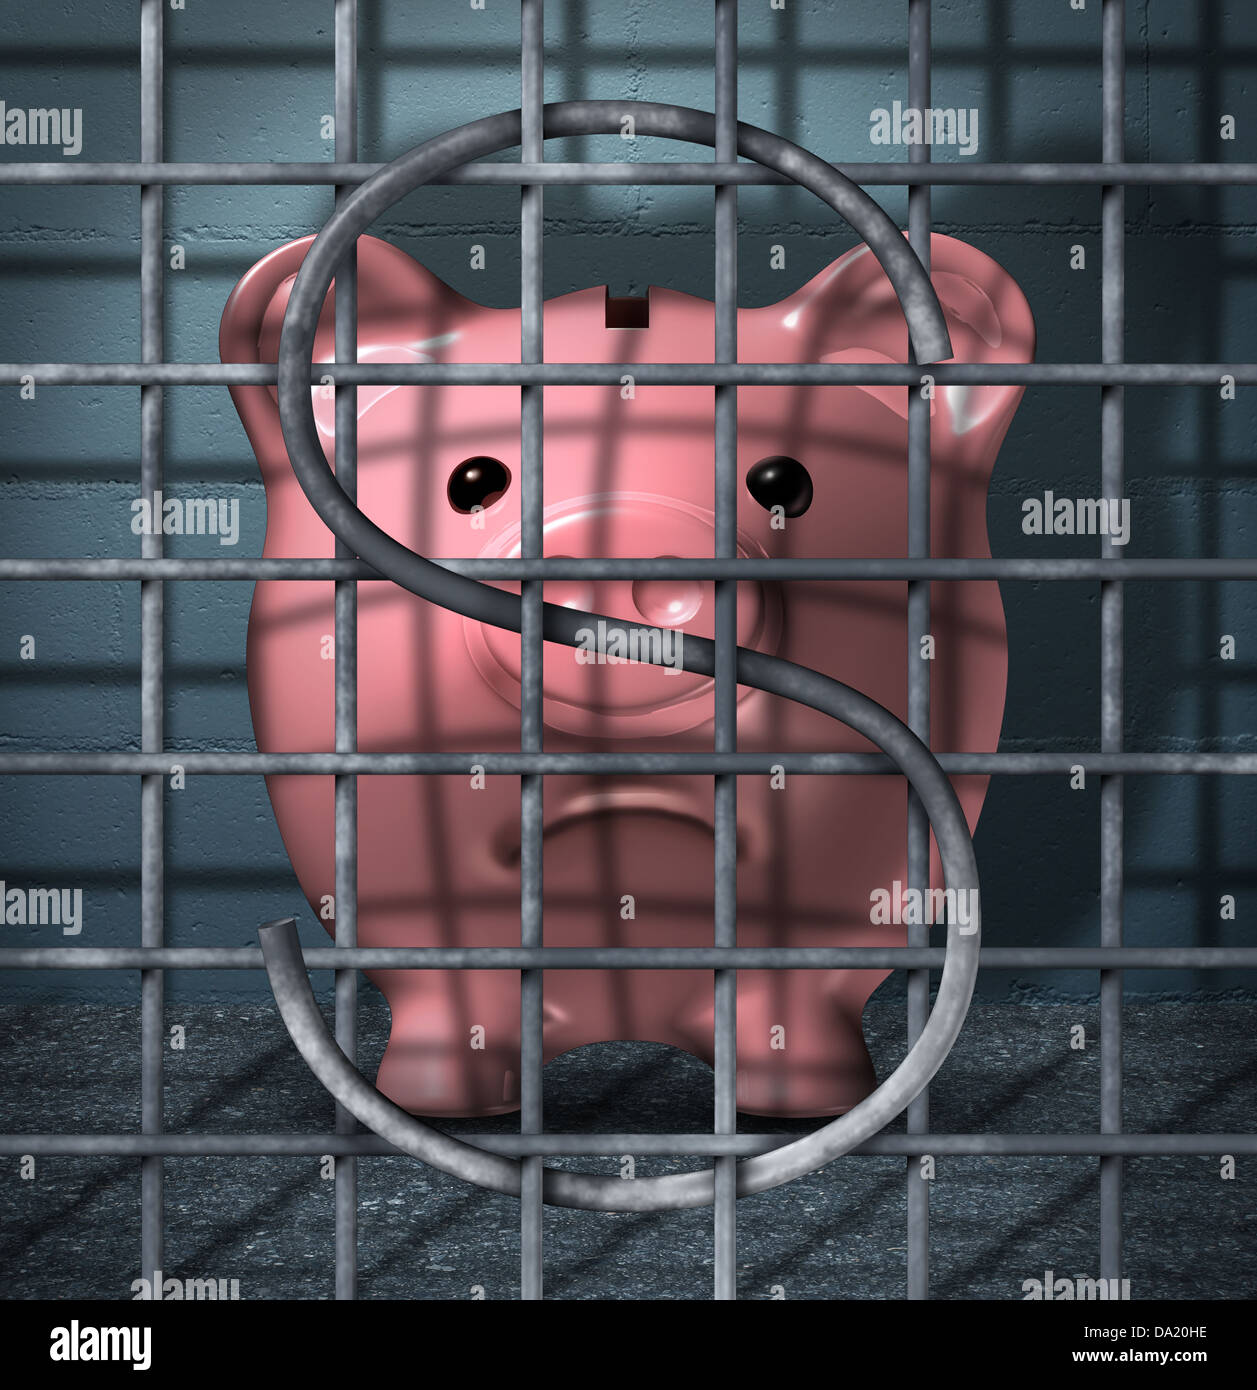 Finanzielle Kriminalität und Wertpapiere Betrug Geschäftskonzept mit einem Sparschwein-Charakter in einer Gefängniszelle Gefängnis mit einem Dollarzeichen in den Metall-Käfig-Bars als Symbol der Gerechtigkeit für kriminelle Finanzen Aktivität. Stockfoto